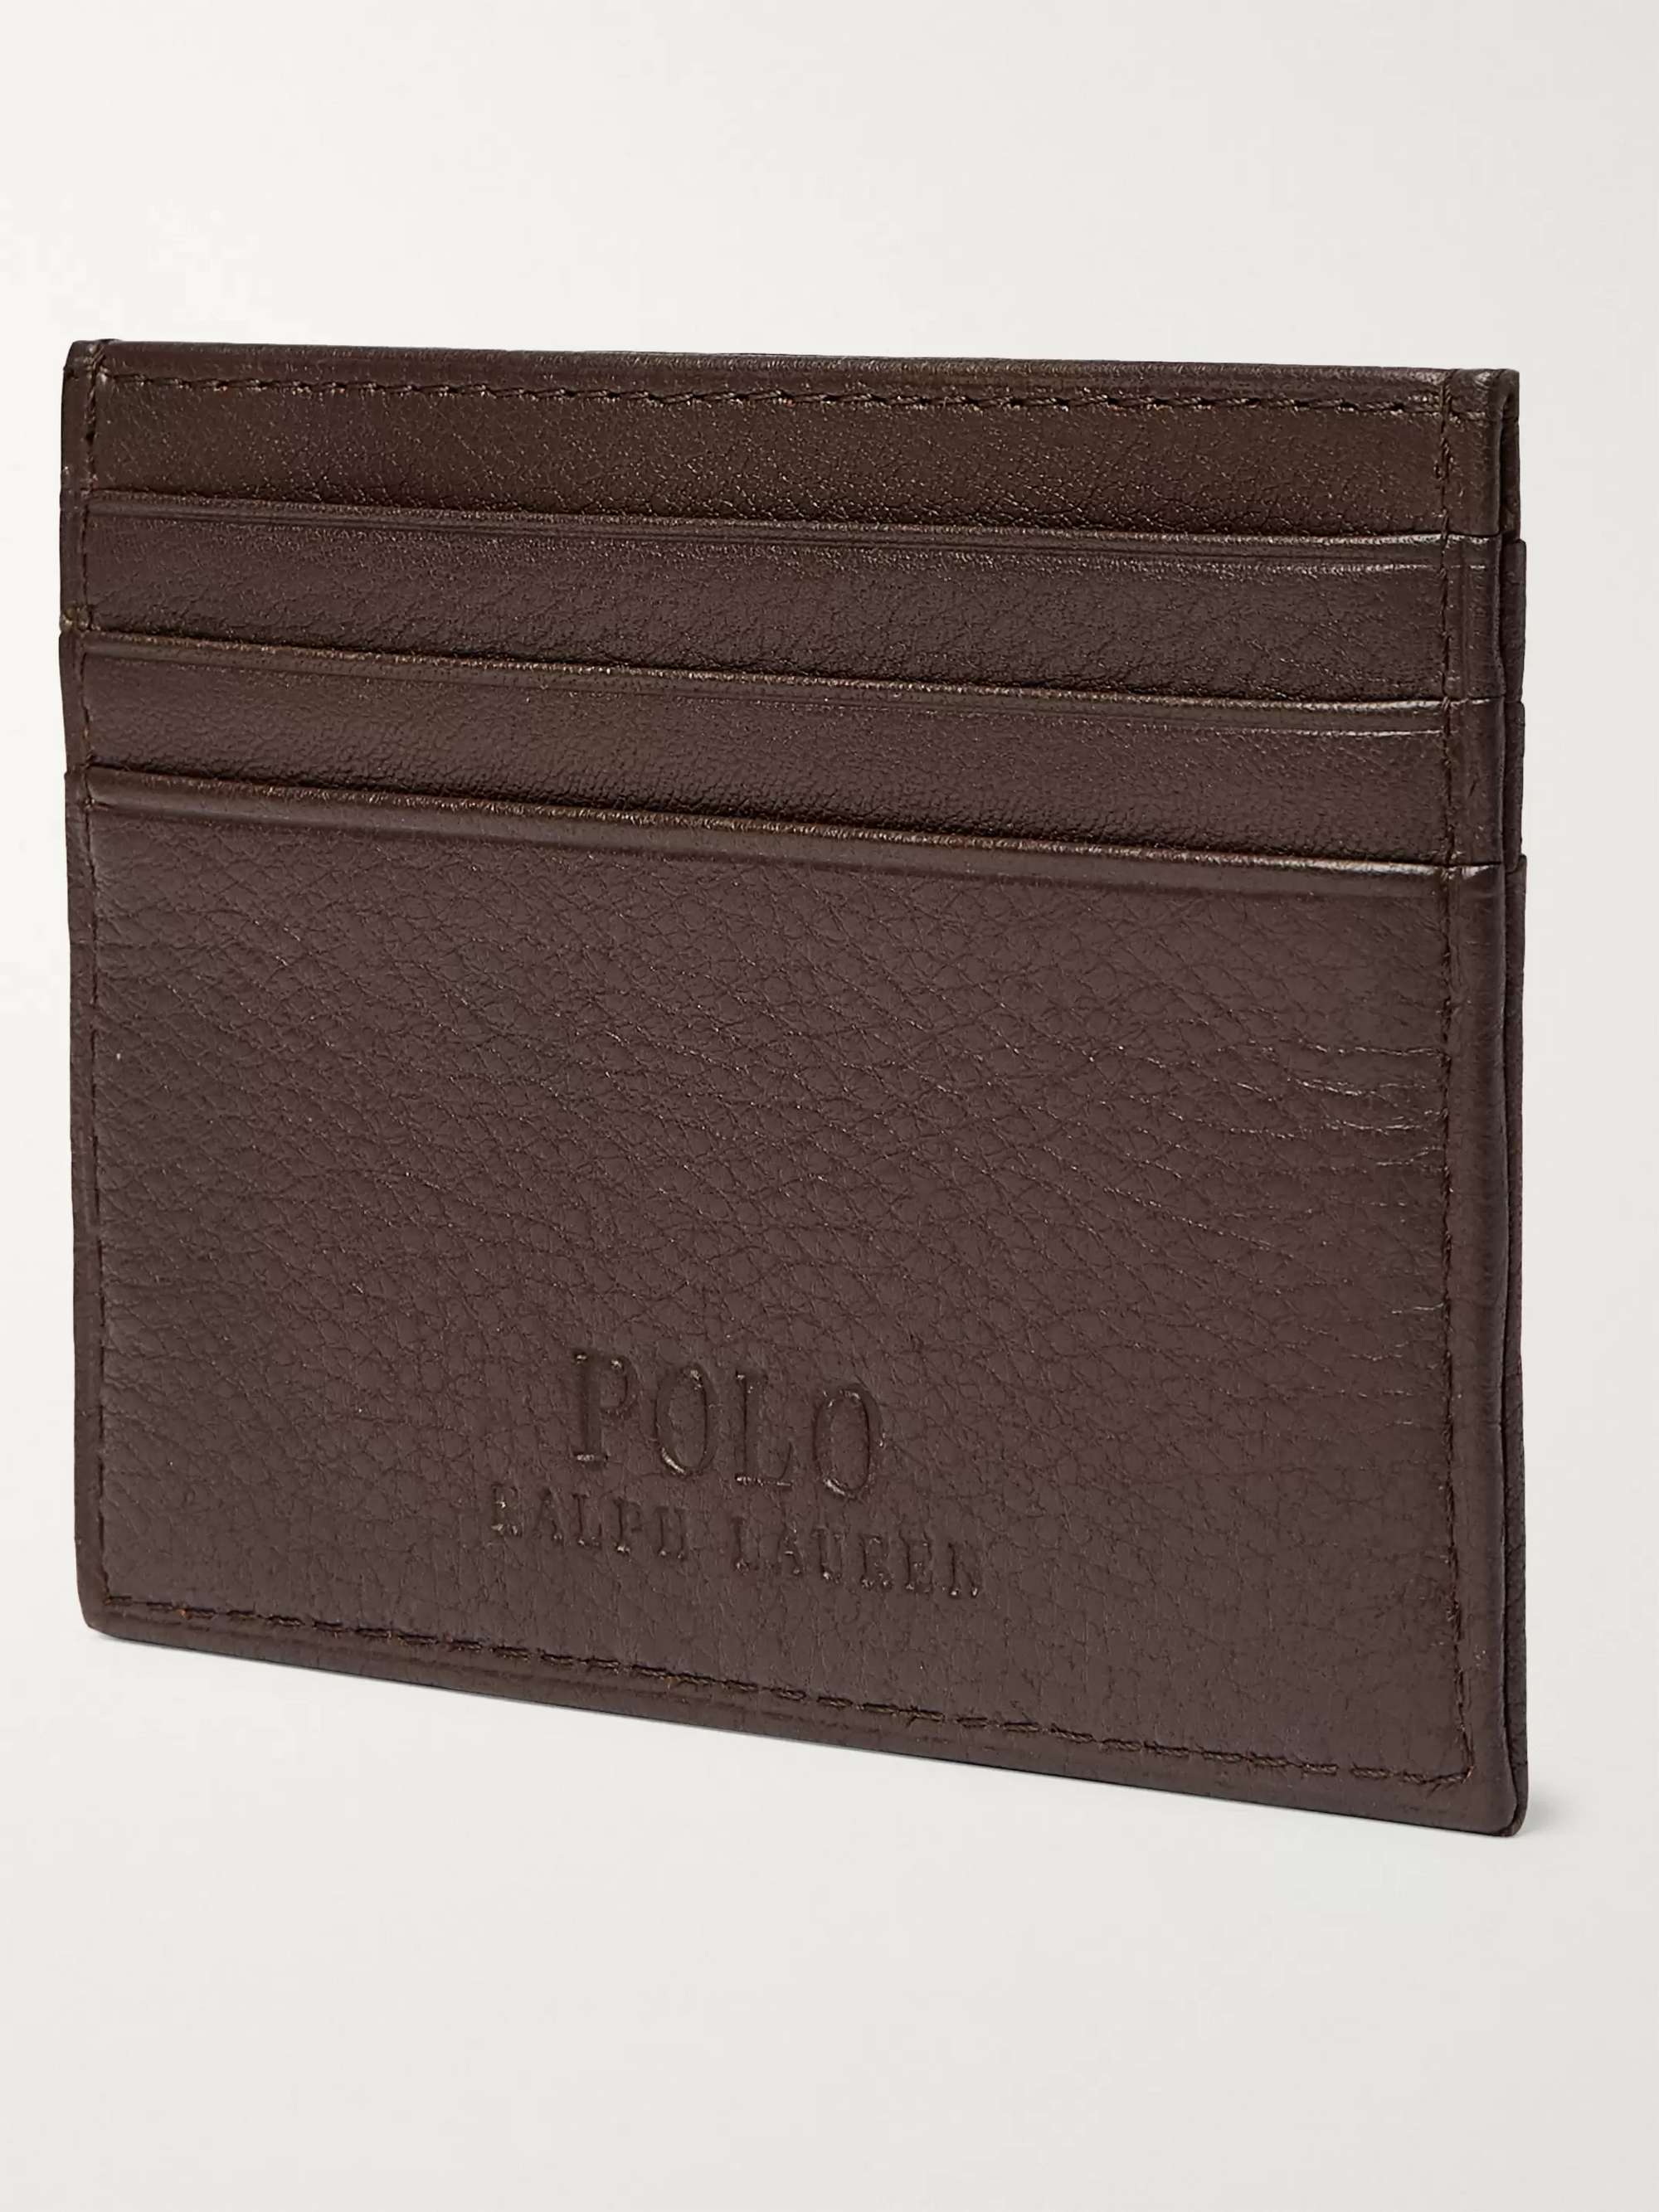 POLO RALPH LAUREN Full-Grain Leather Cardholder | MR PORTER